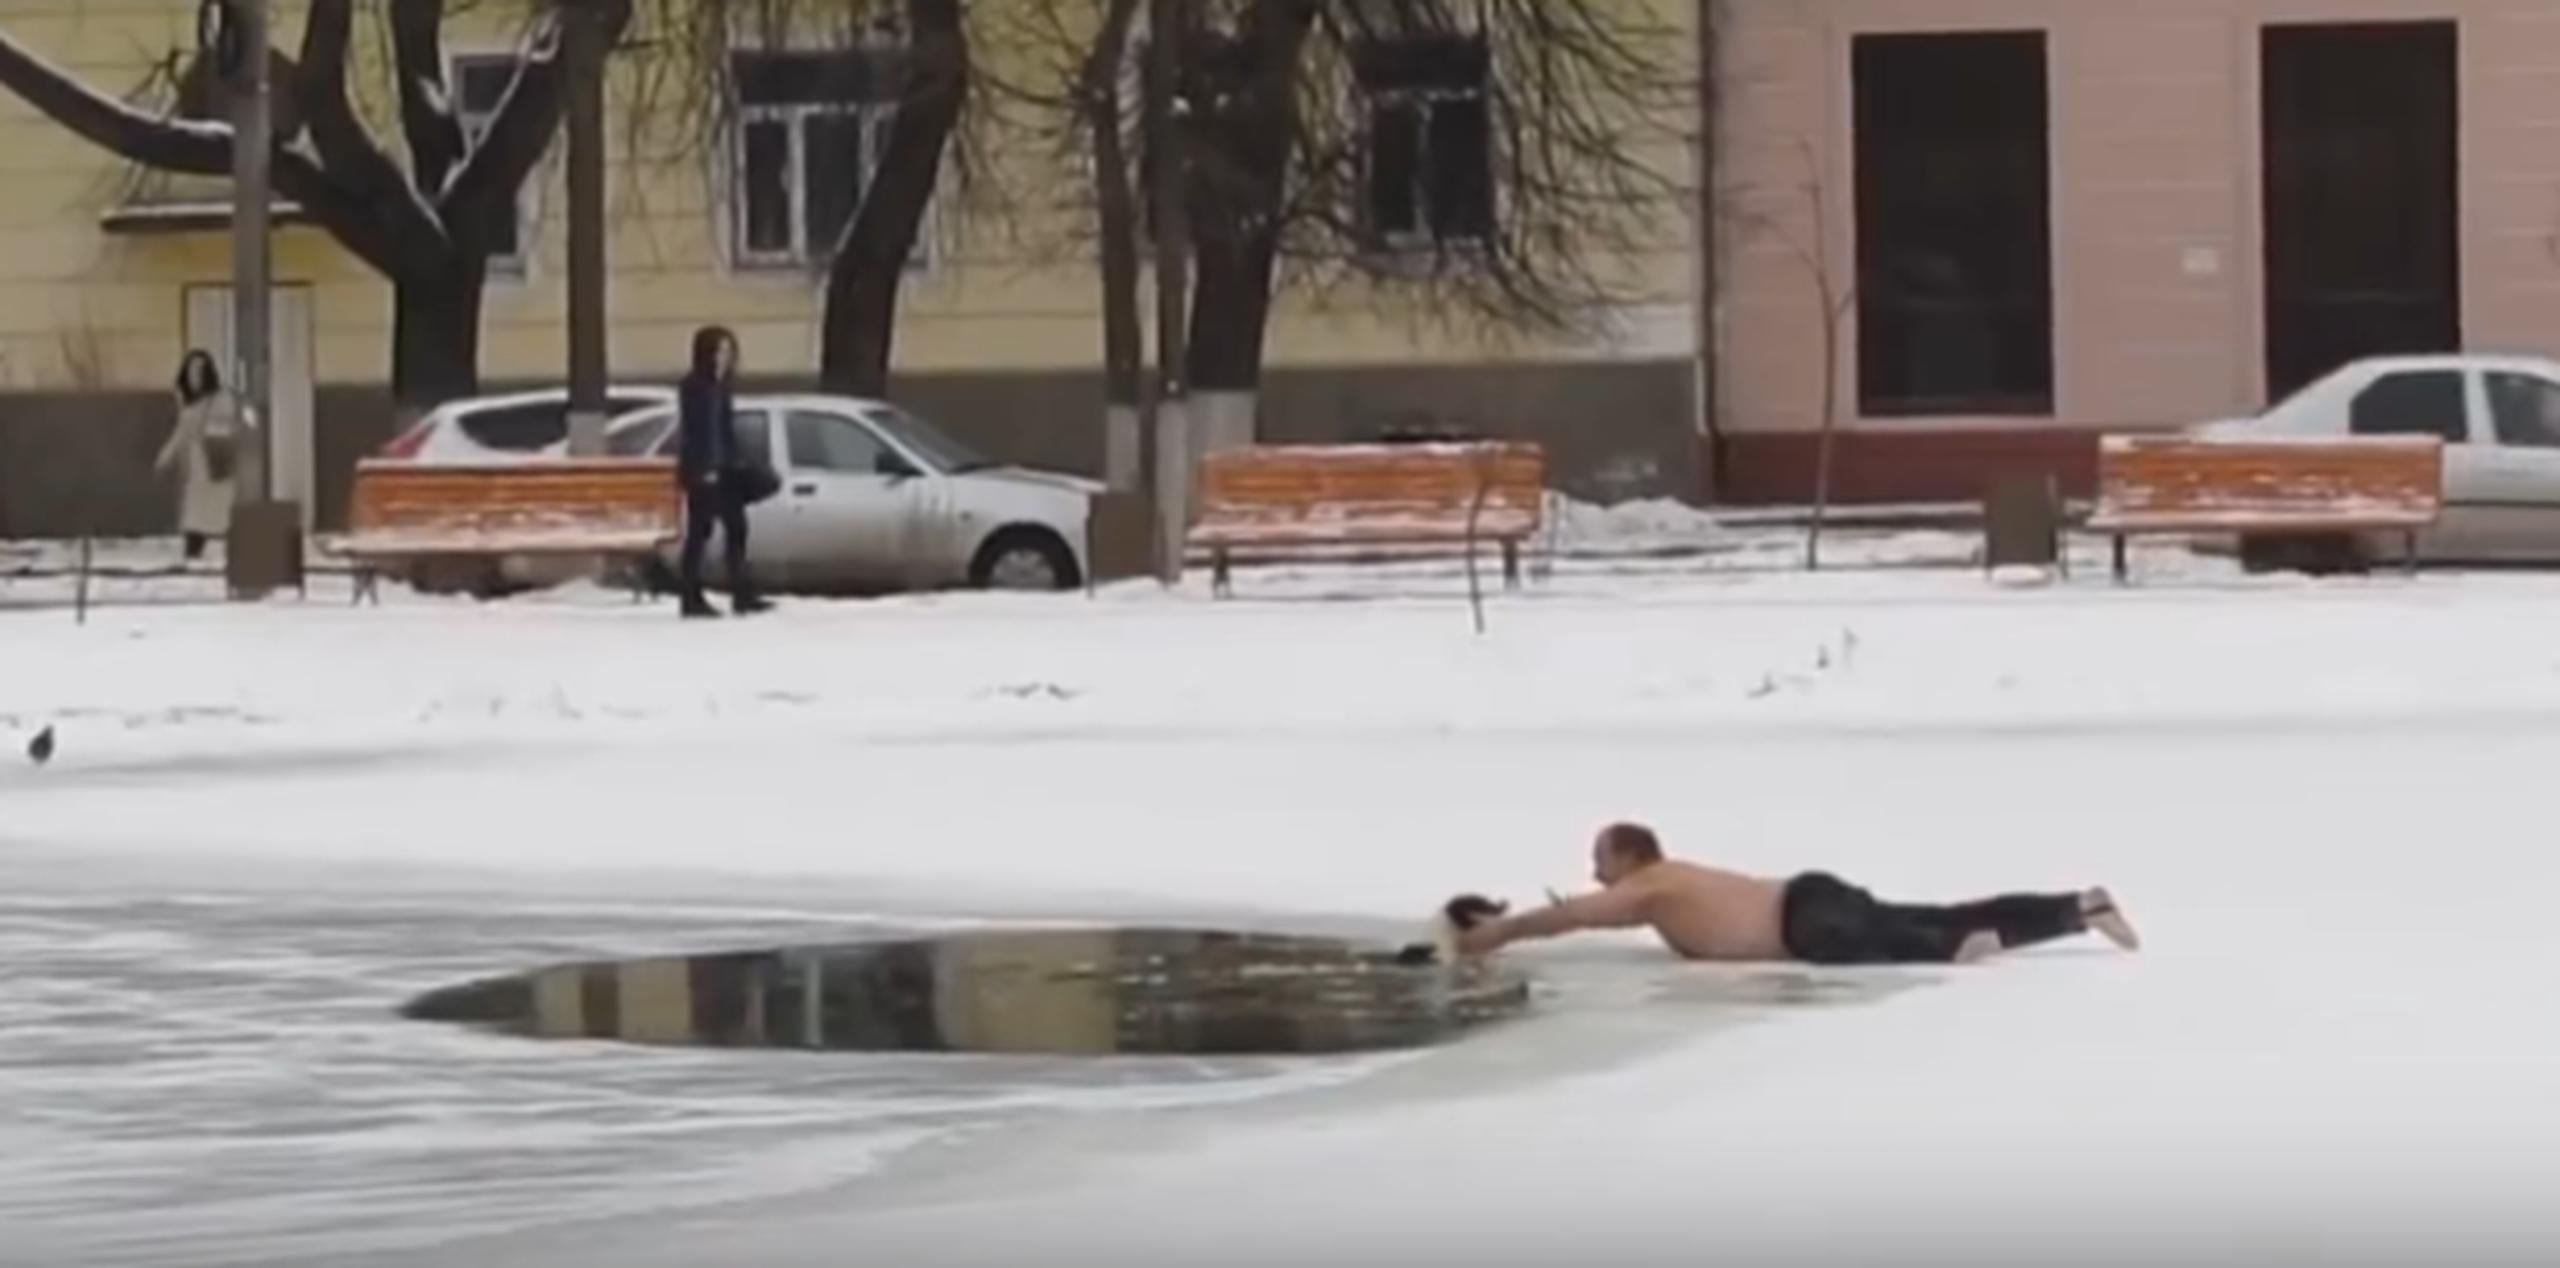 El incidente ocurrió en Rusia. (YouTube)